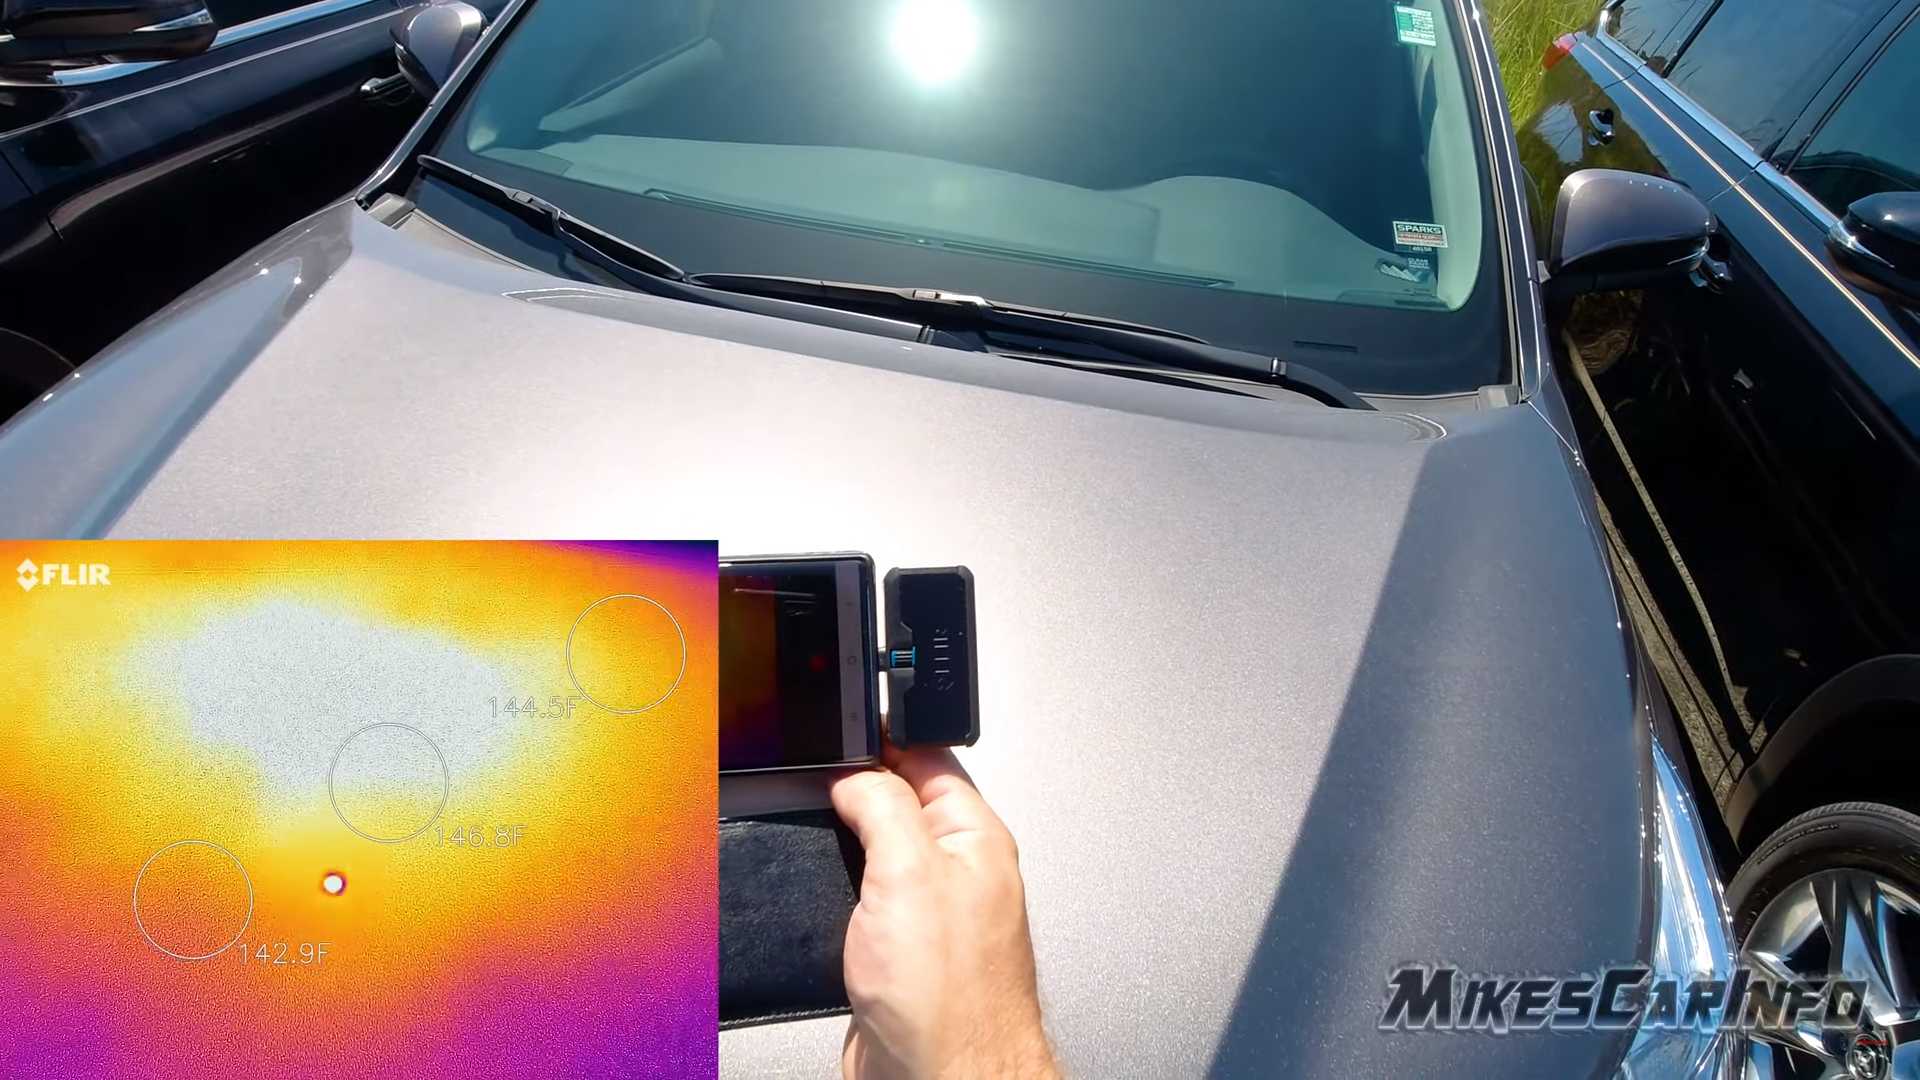 "بالفيديو" لأي مدى تختلف درجة حرارة السيارة اعتماداً على لونها؟ 2